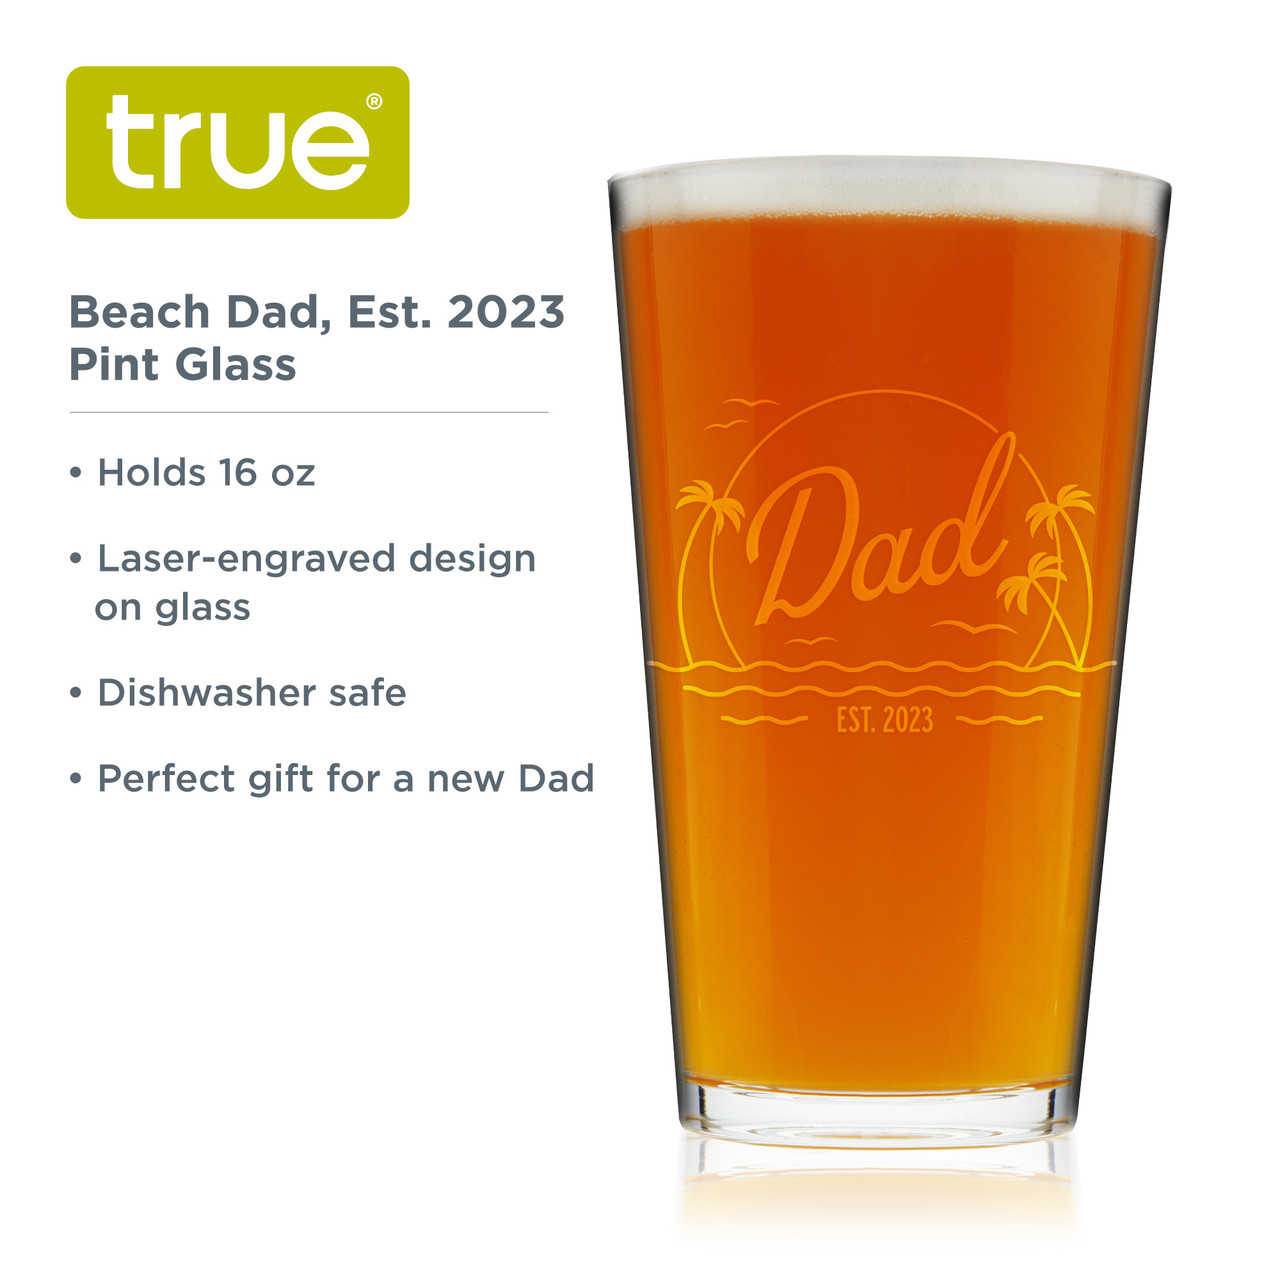 Beach Dad, Est. 2023 Pint Glass